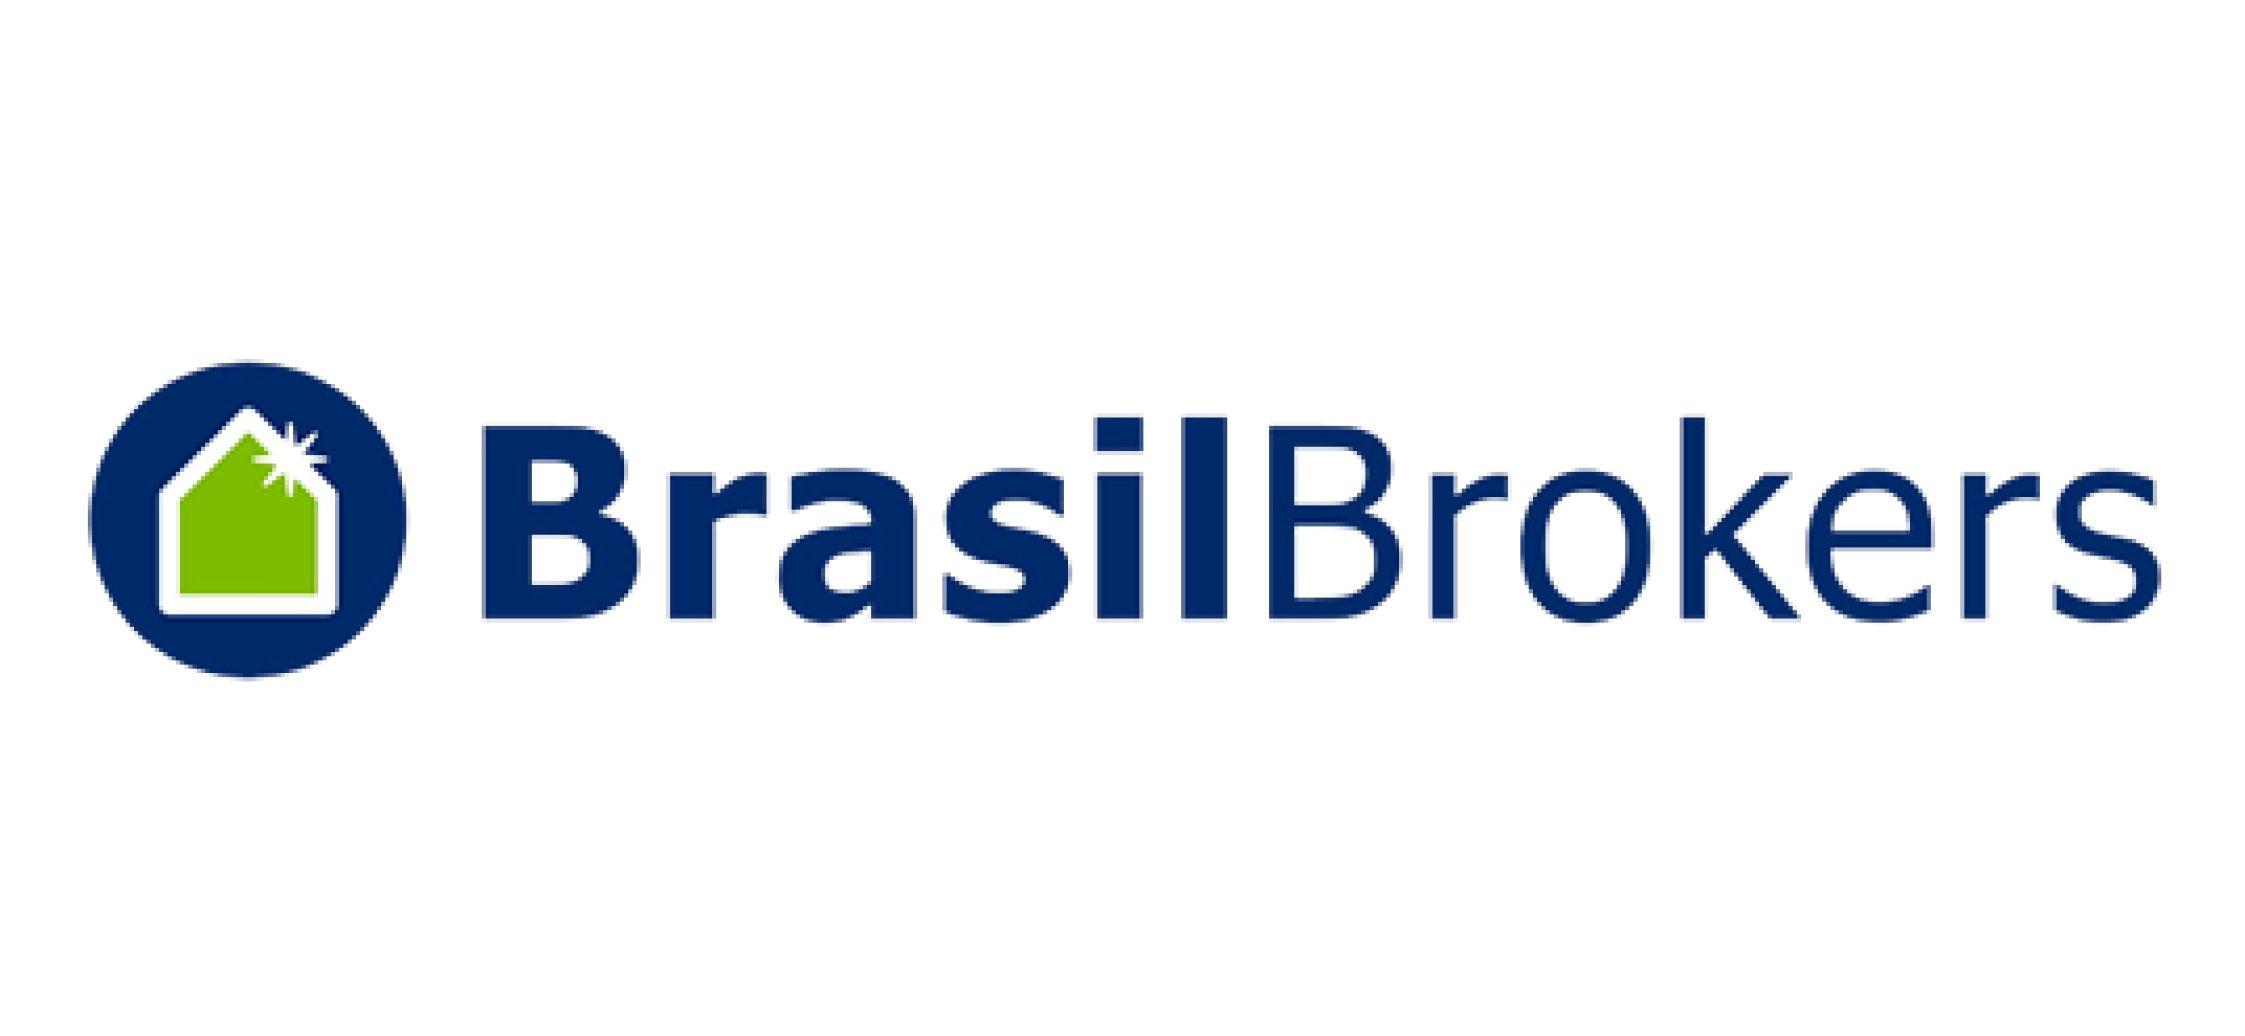 BrasilBrokers